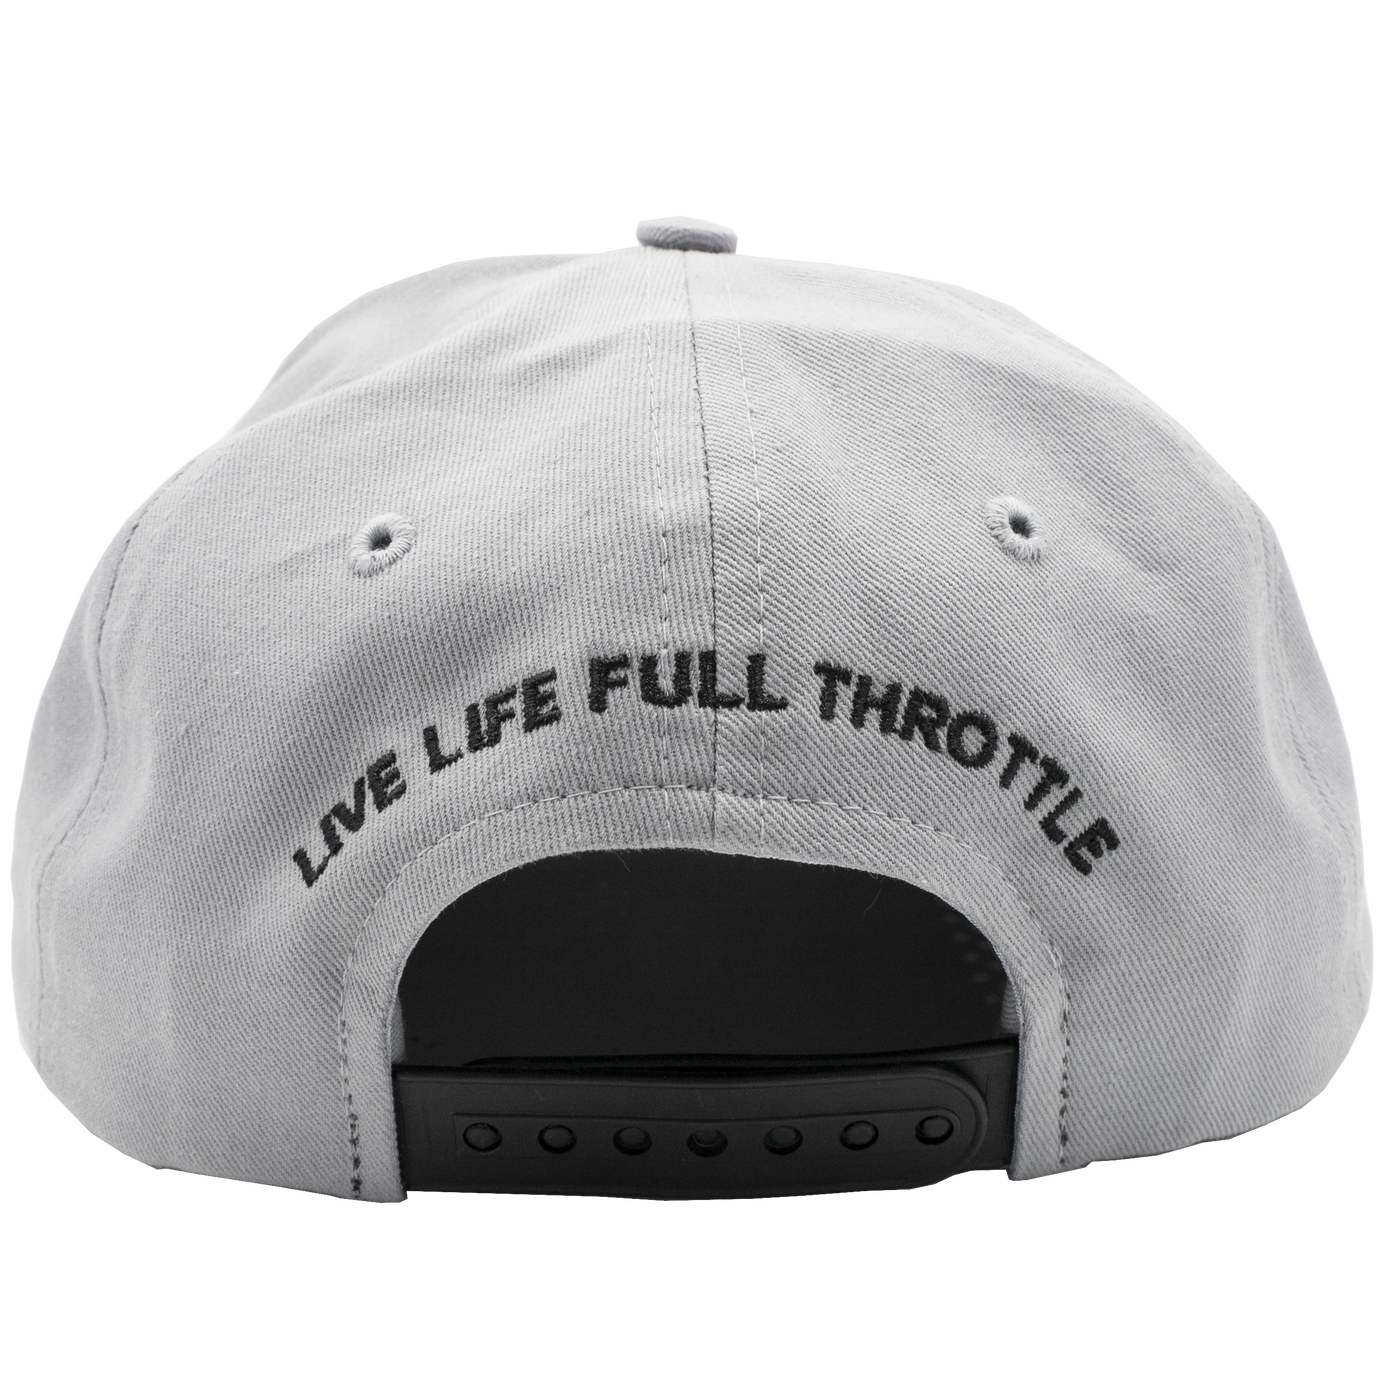 Live Life Full Throttle Hat 3D